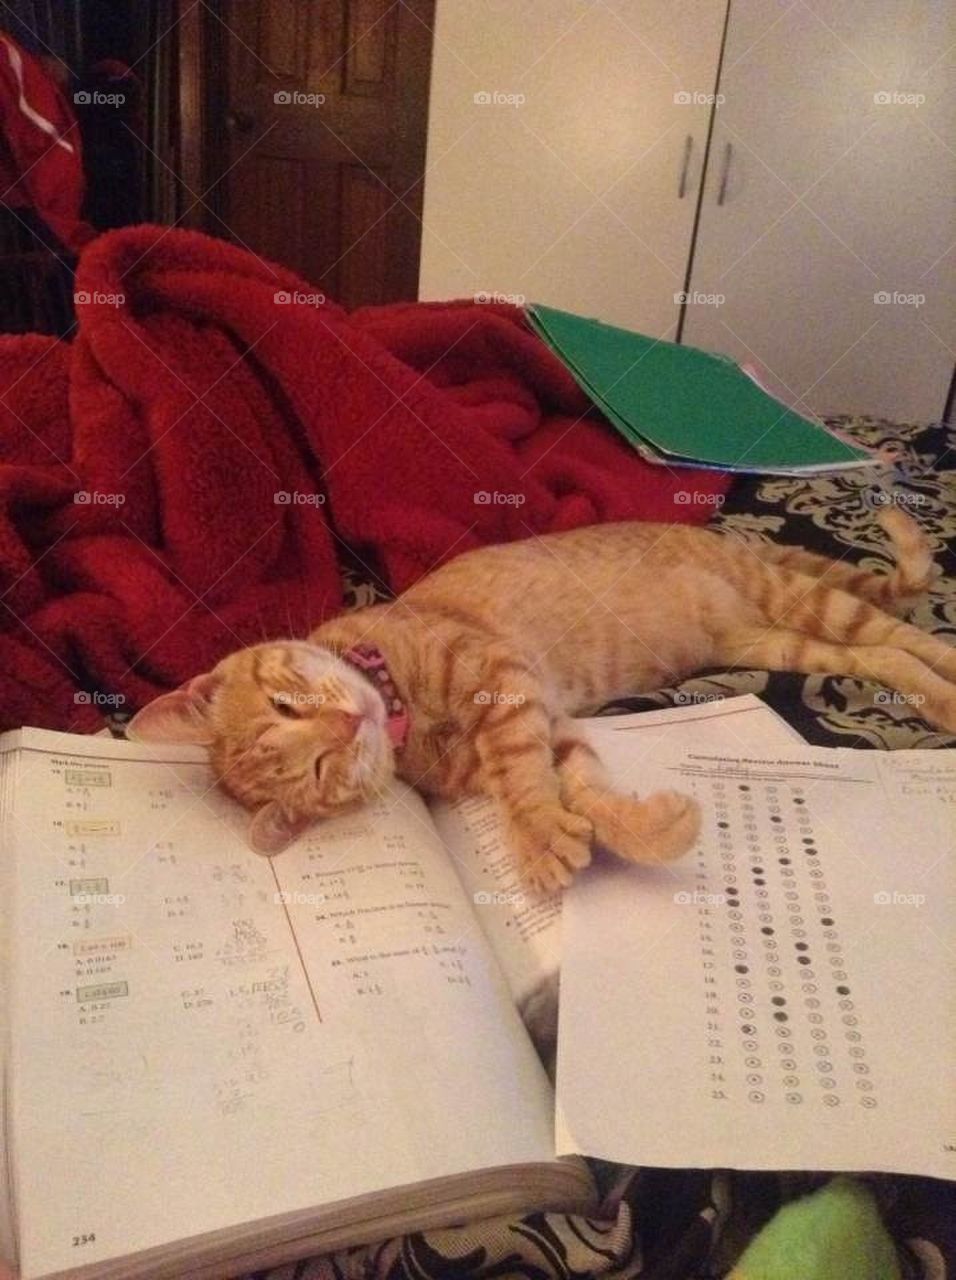 Homework helper